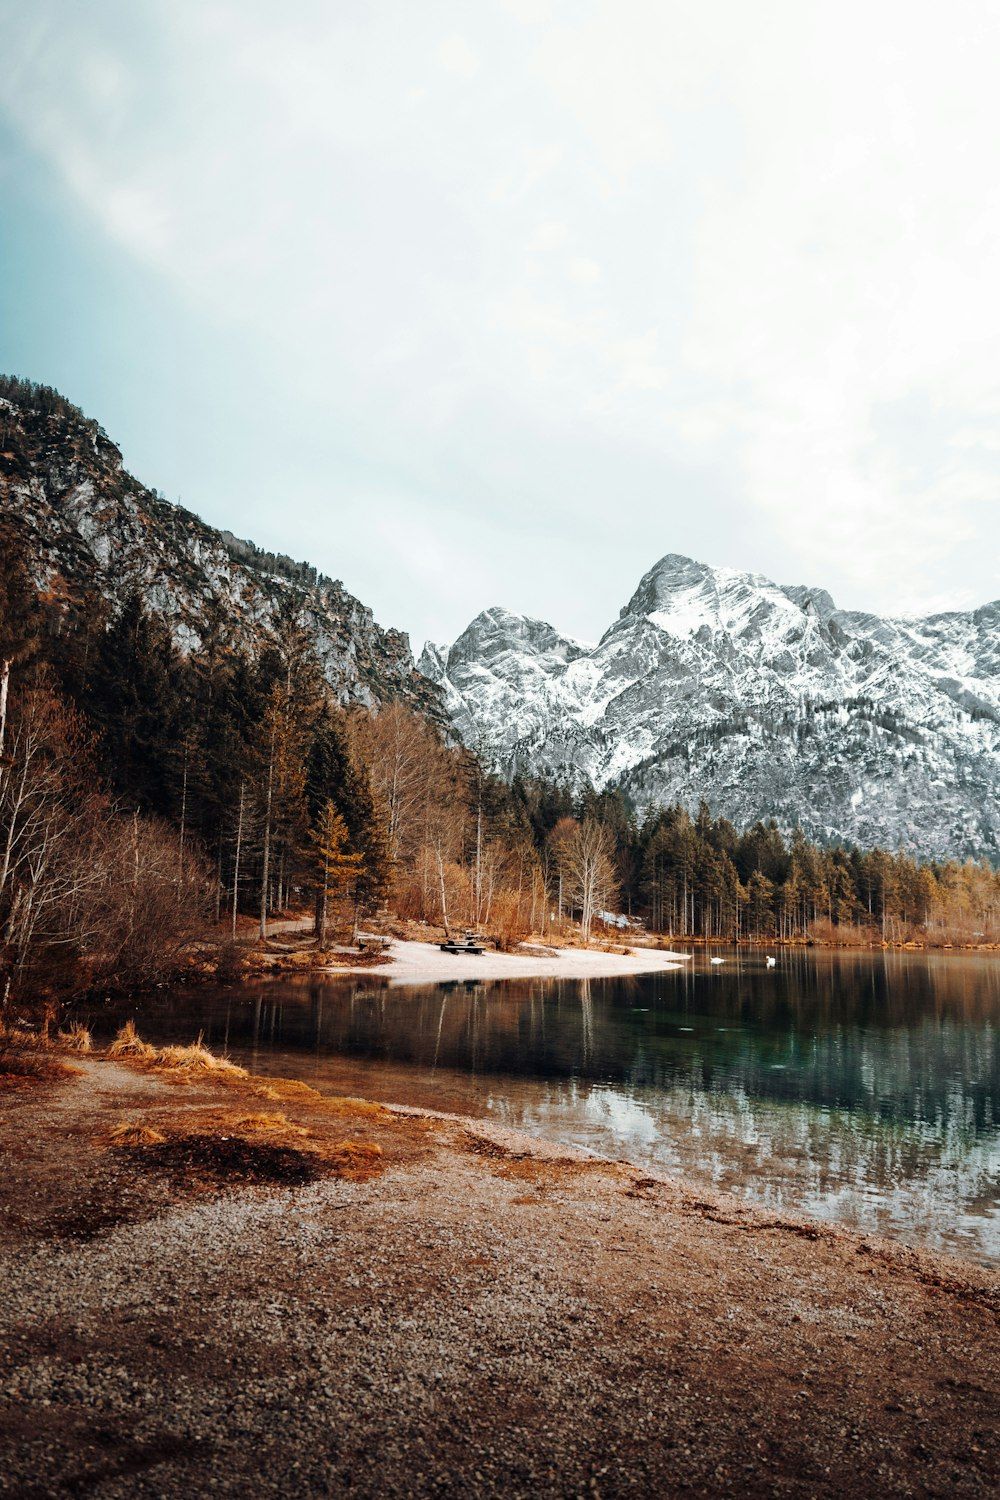  Wald See Hintergrundbild 1000x1500. Foto zum Thema See tagsüber von Bäumen und Bergen umgeben